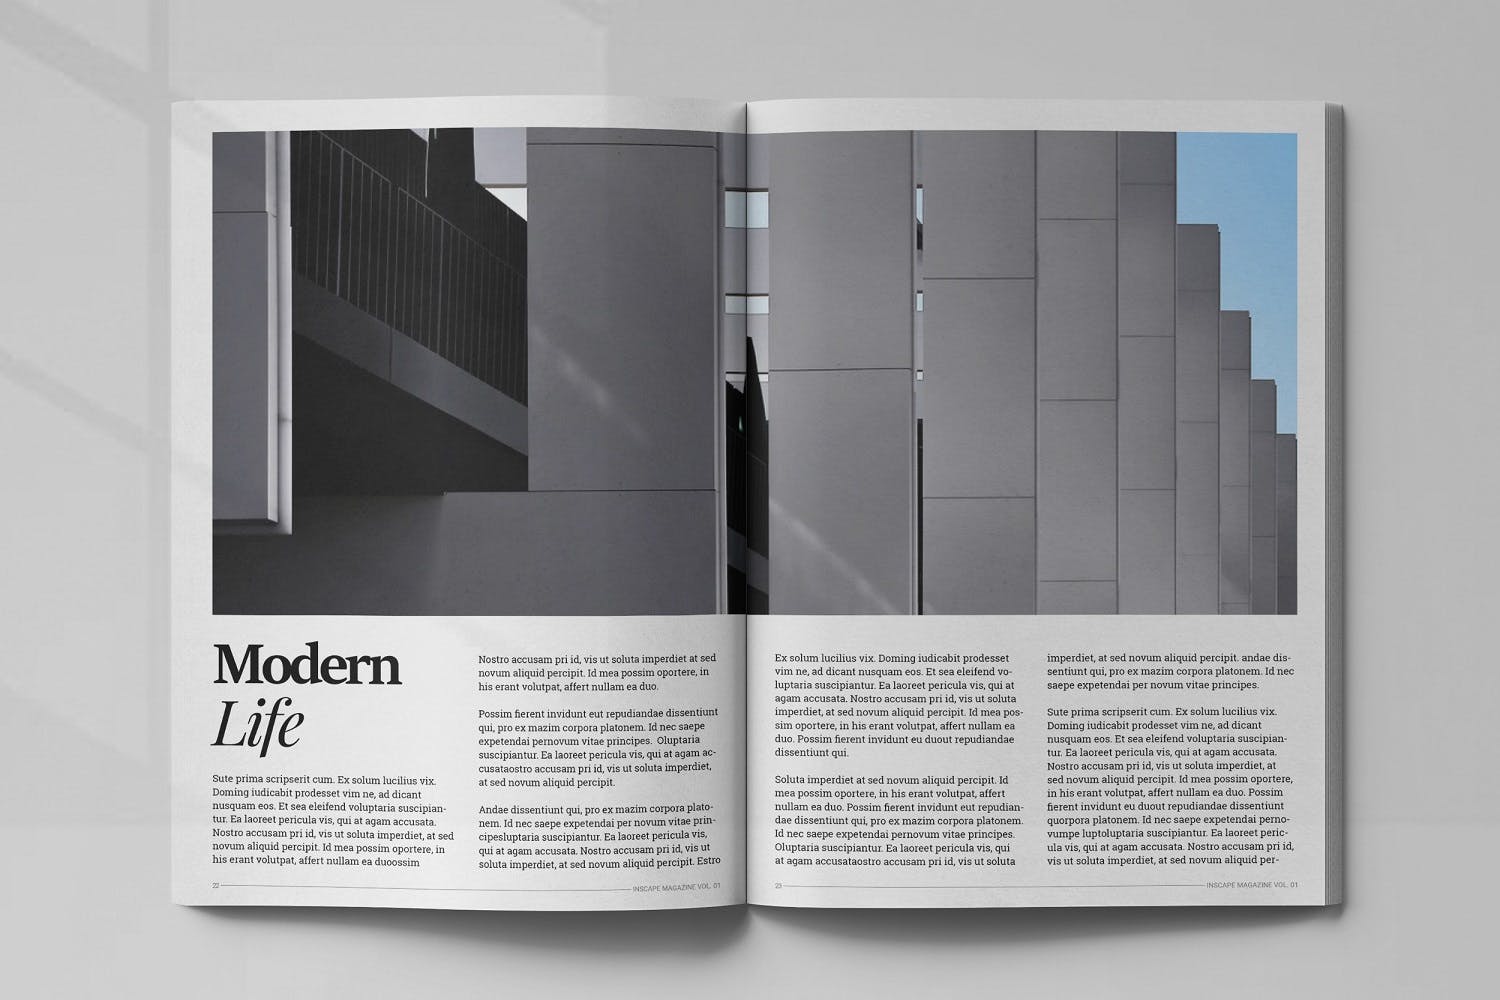 室内设计主题16设计网精选杂志排版设计模板 Inscape Interior Magazine插图(11)